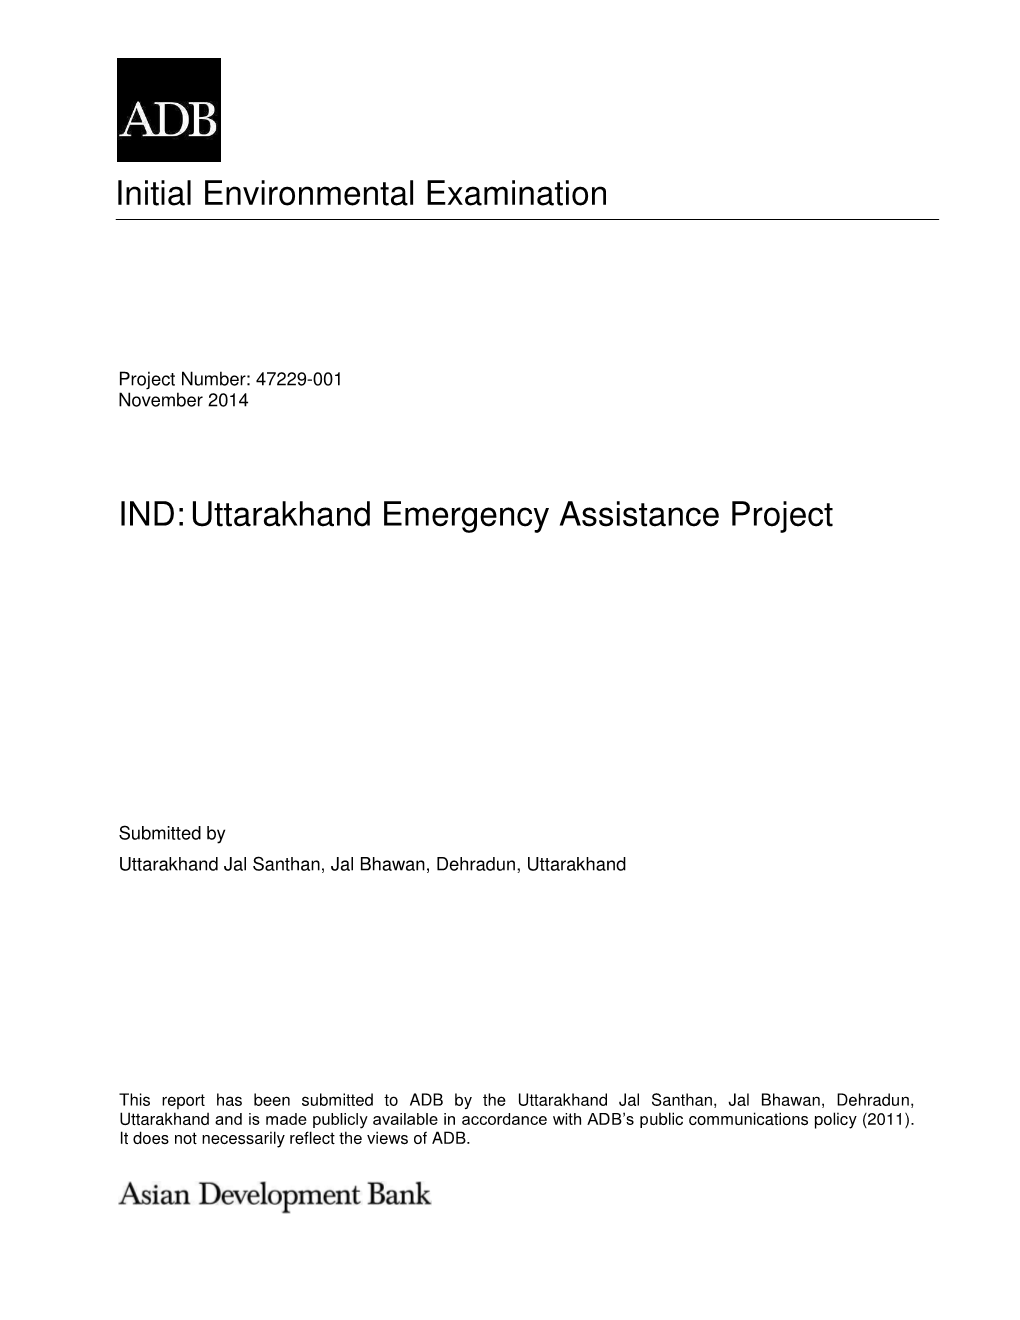 Initial Environmental Examination IND:Uttarakhand Emergency